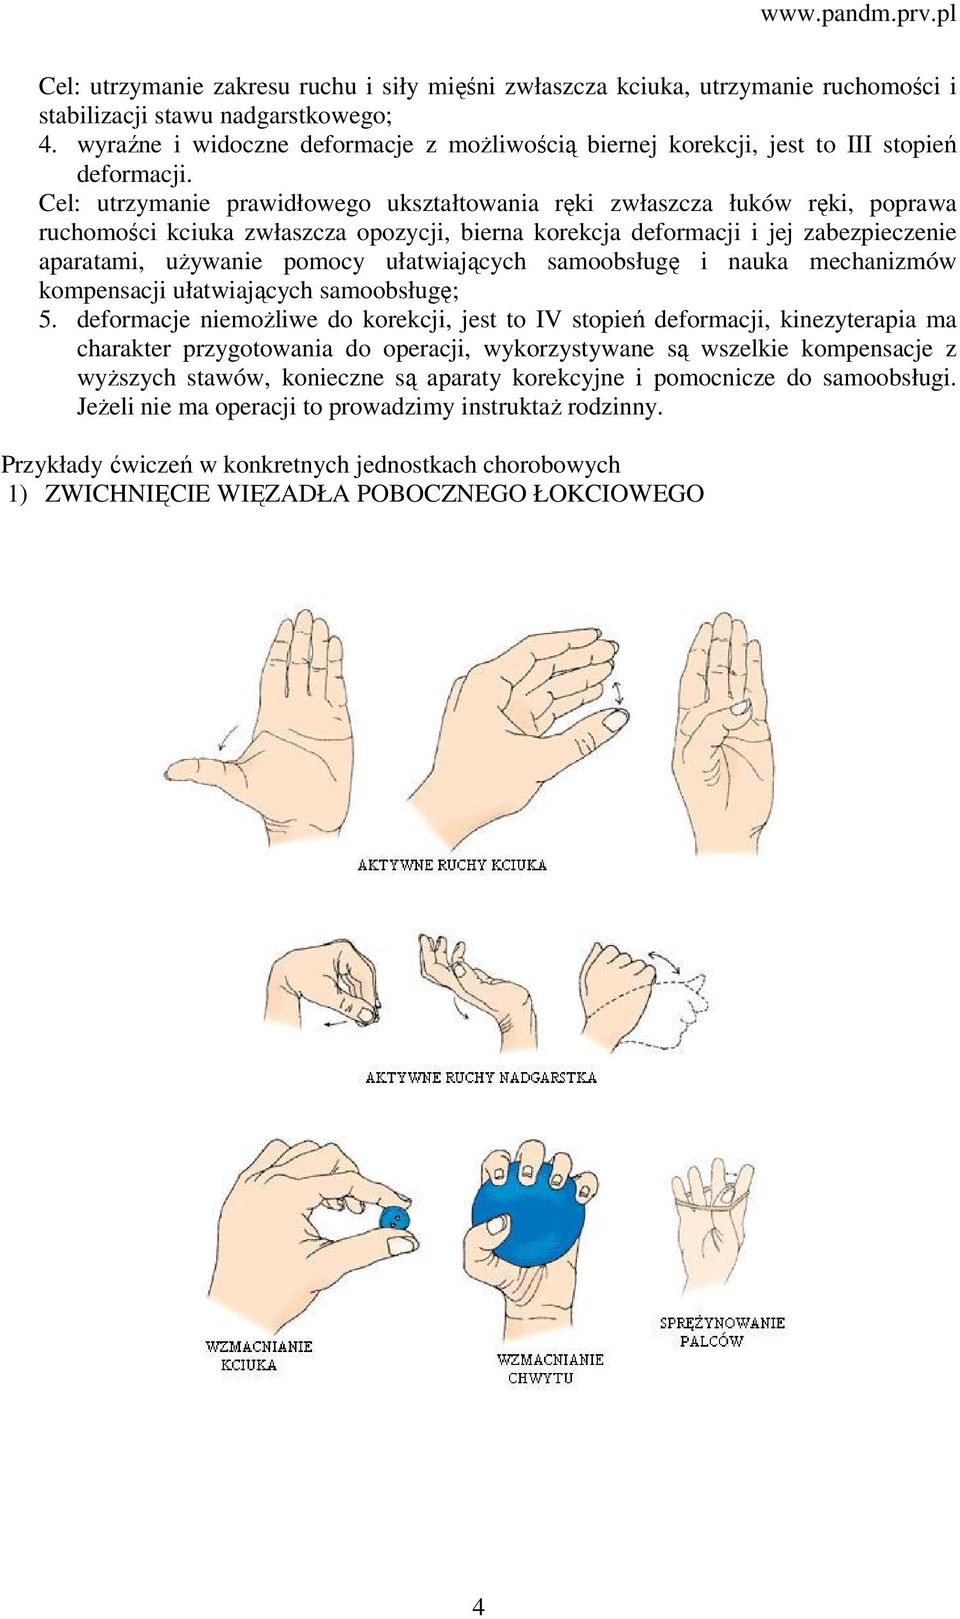 Cel: utrzymanie prawidłowego ukształtowania ręki zwłaszcza łuków ręki, poprawa ruchomości kciuka zwłaszcza opozycji, bierna korekcja deformacji i jej zabezpieczenie aparatami, używanie pomocy